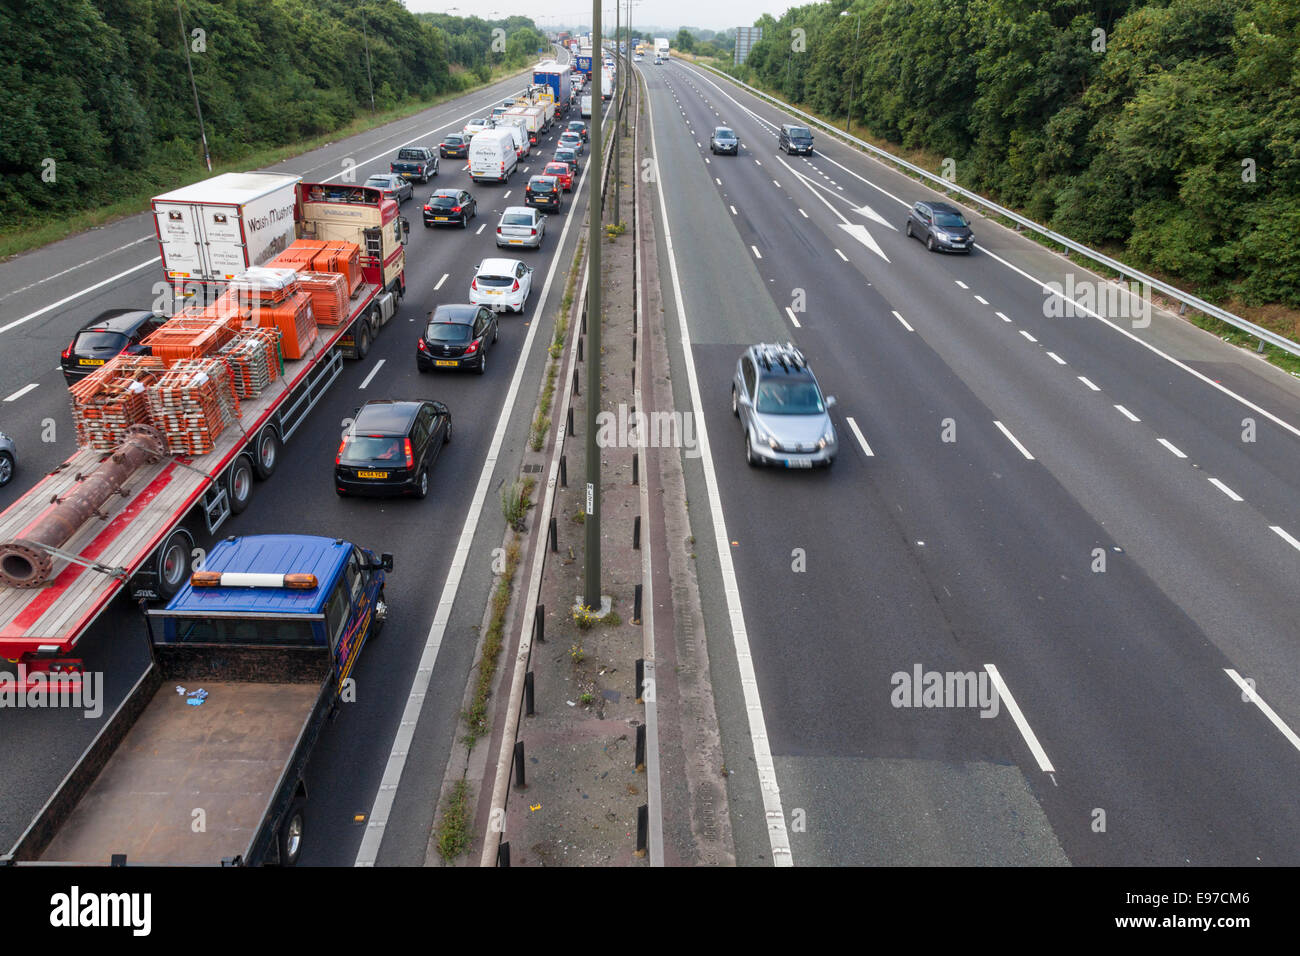 Traffic Jam. Warteschlange mit Fahrzeugen im Stillstand auf der Autobahn M1 in Richtung Süden Fahrbahn mit klaren northbound Wege. Nottinghamshire, England, Großbritannien Stockfoto